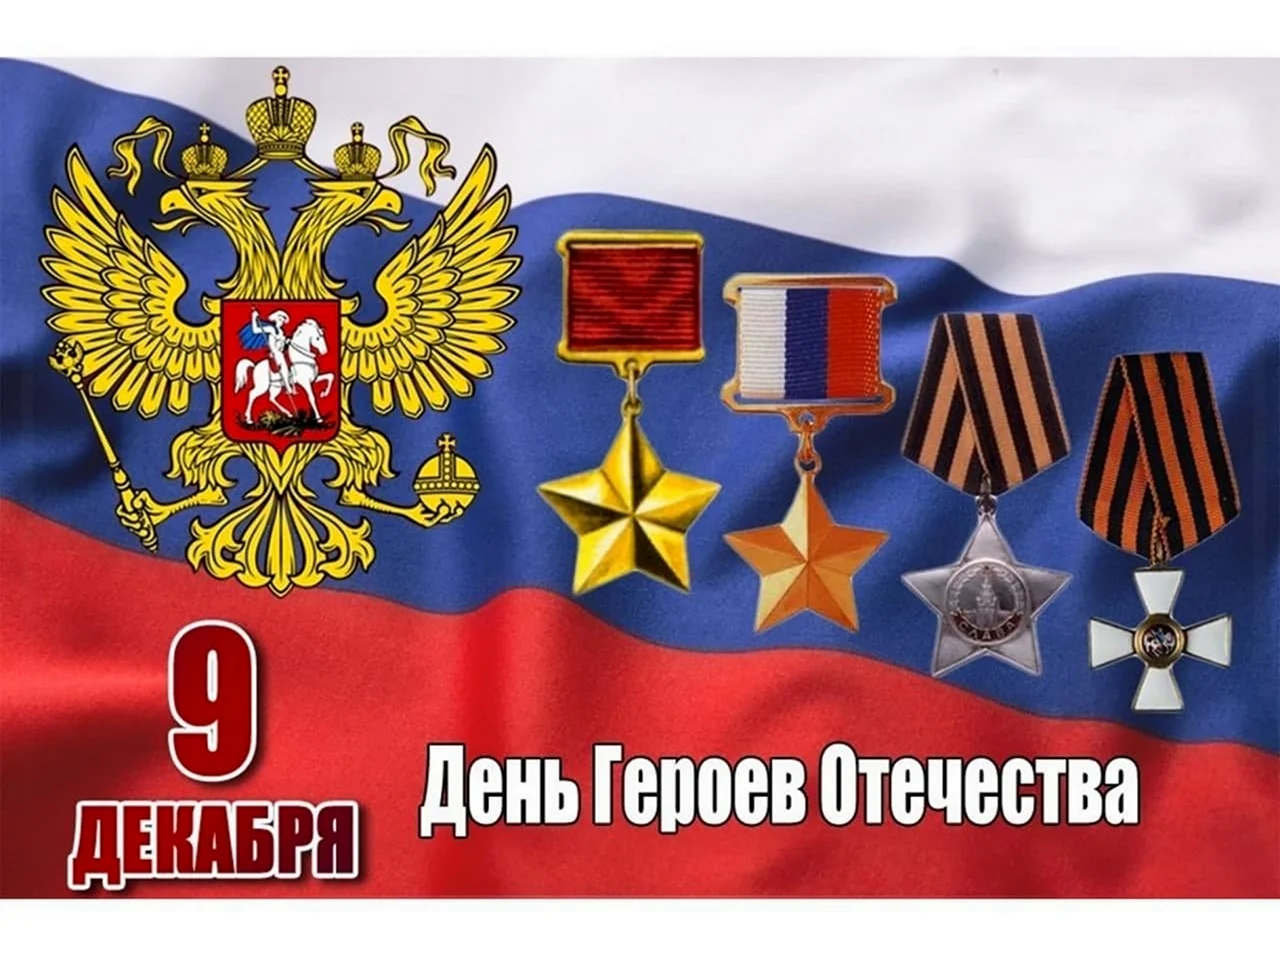 Ордена героев Отечества 9 декабря. Поздравление